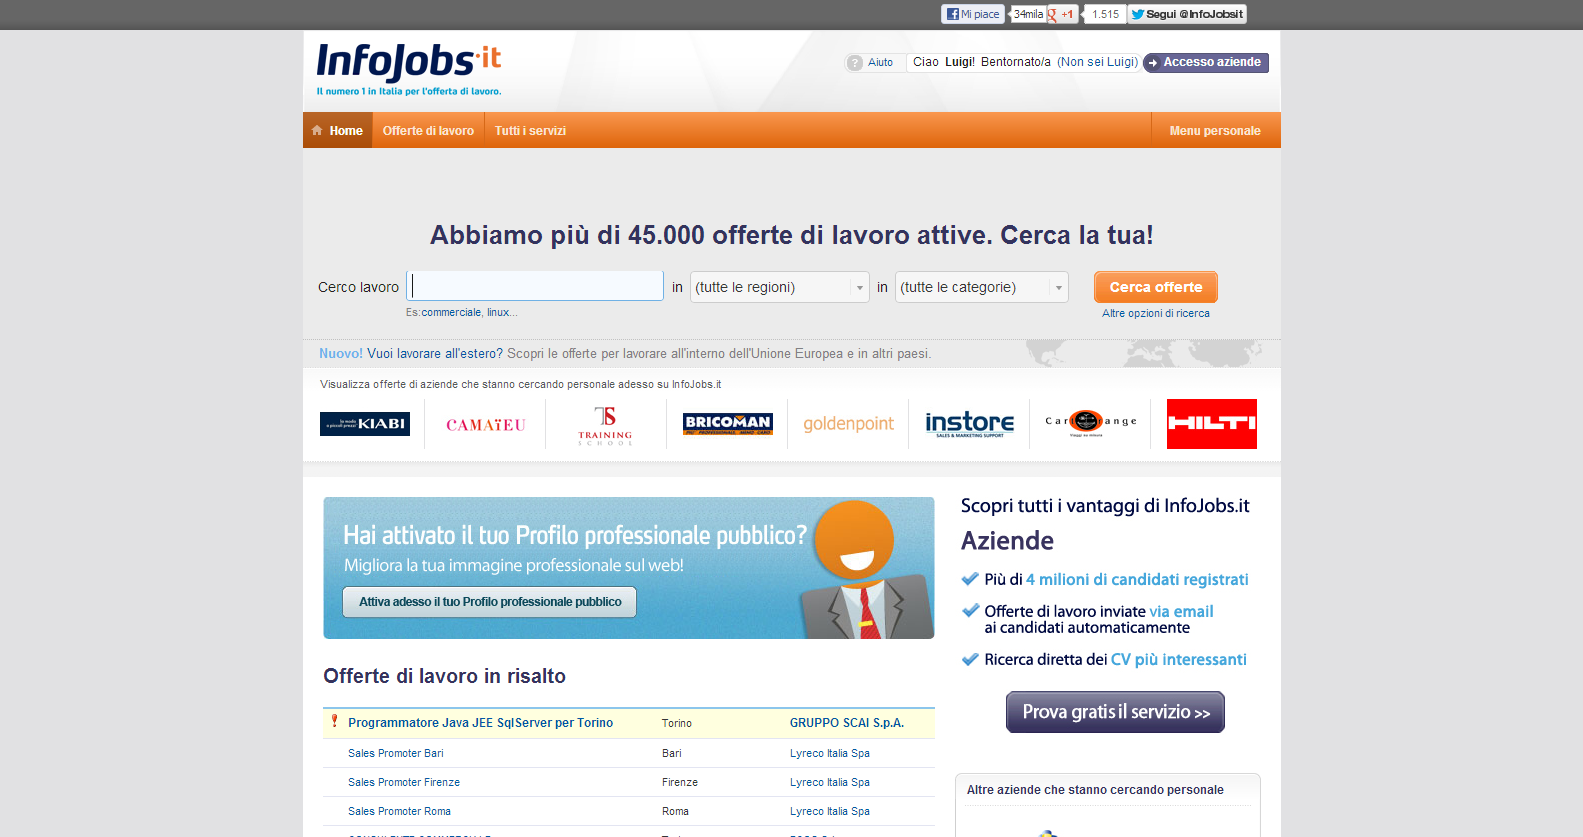 Schermata principale del portale infojobs.it